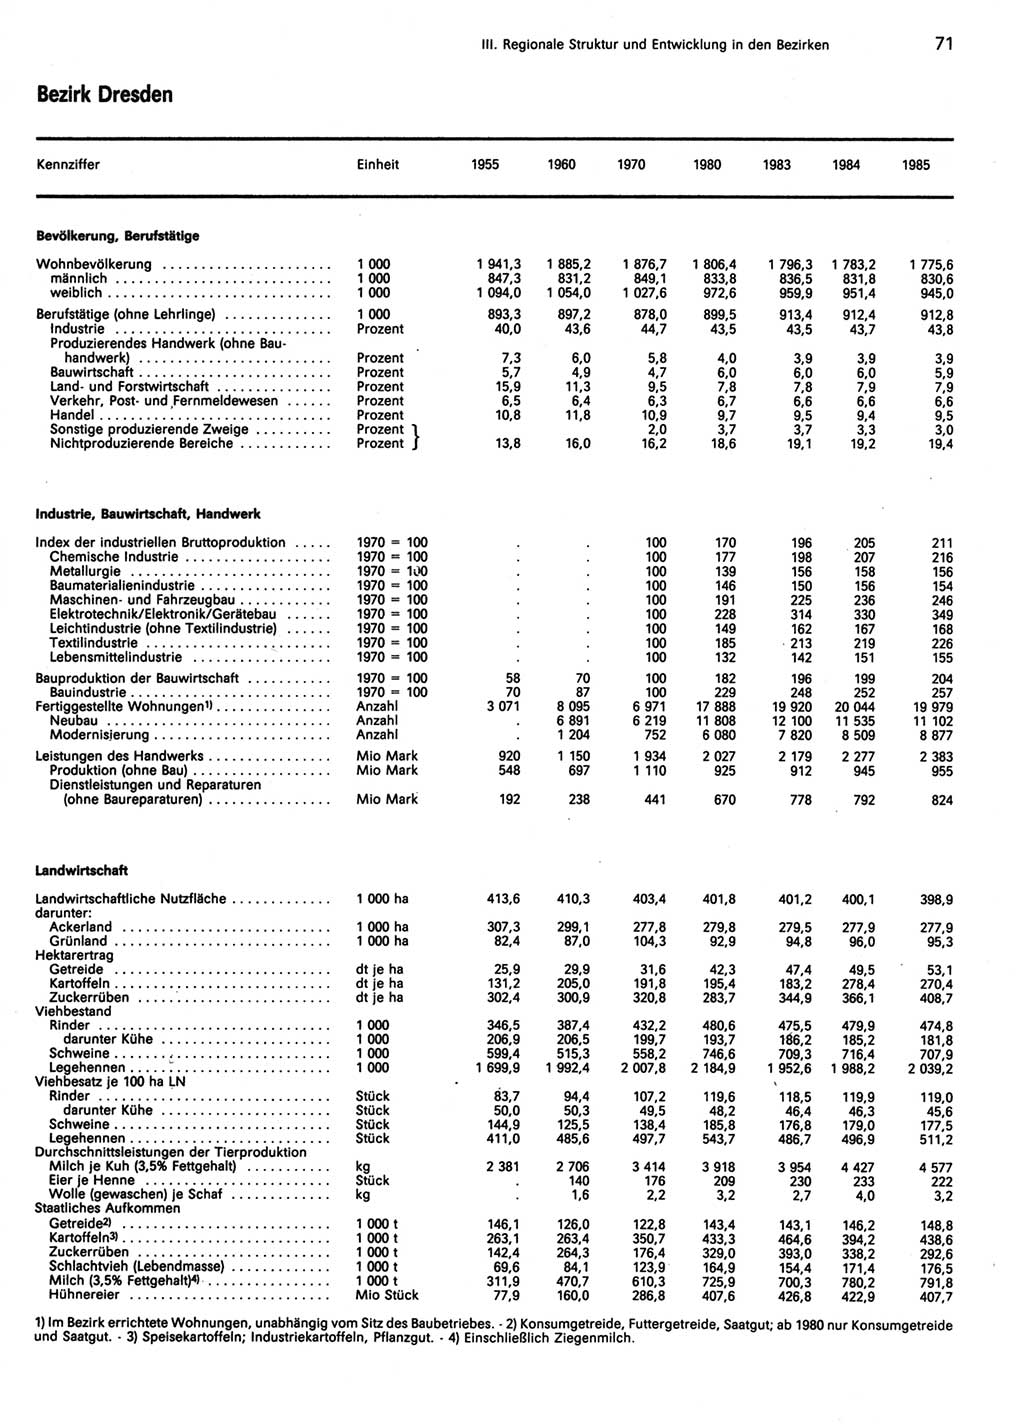 Statistisches Jahrbuch der Deutschen Demokratischen Republik (DDR) 1986, Seite 71 (Stat. Jb. DDR 1986, S. 71)